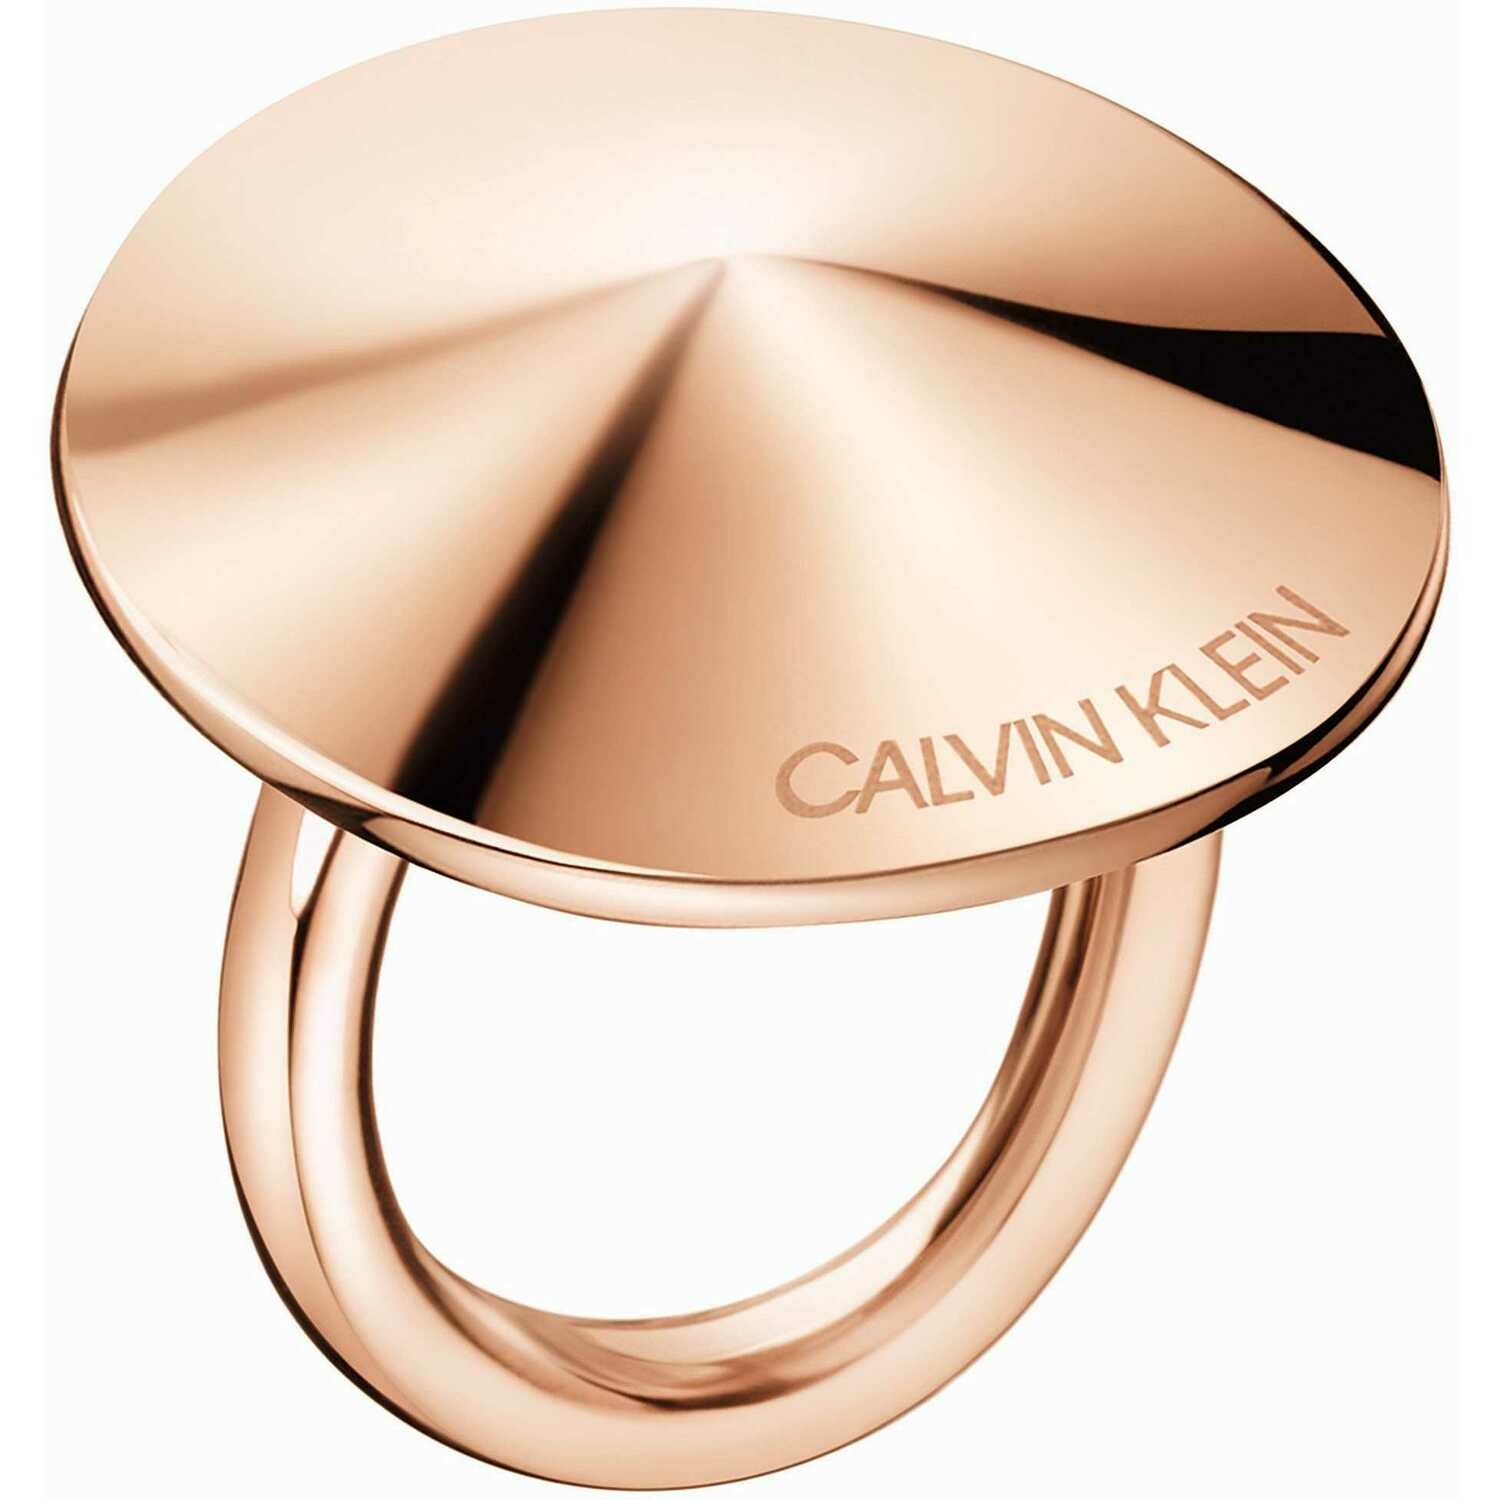 Calvin Klein Spinner taille 56